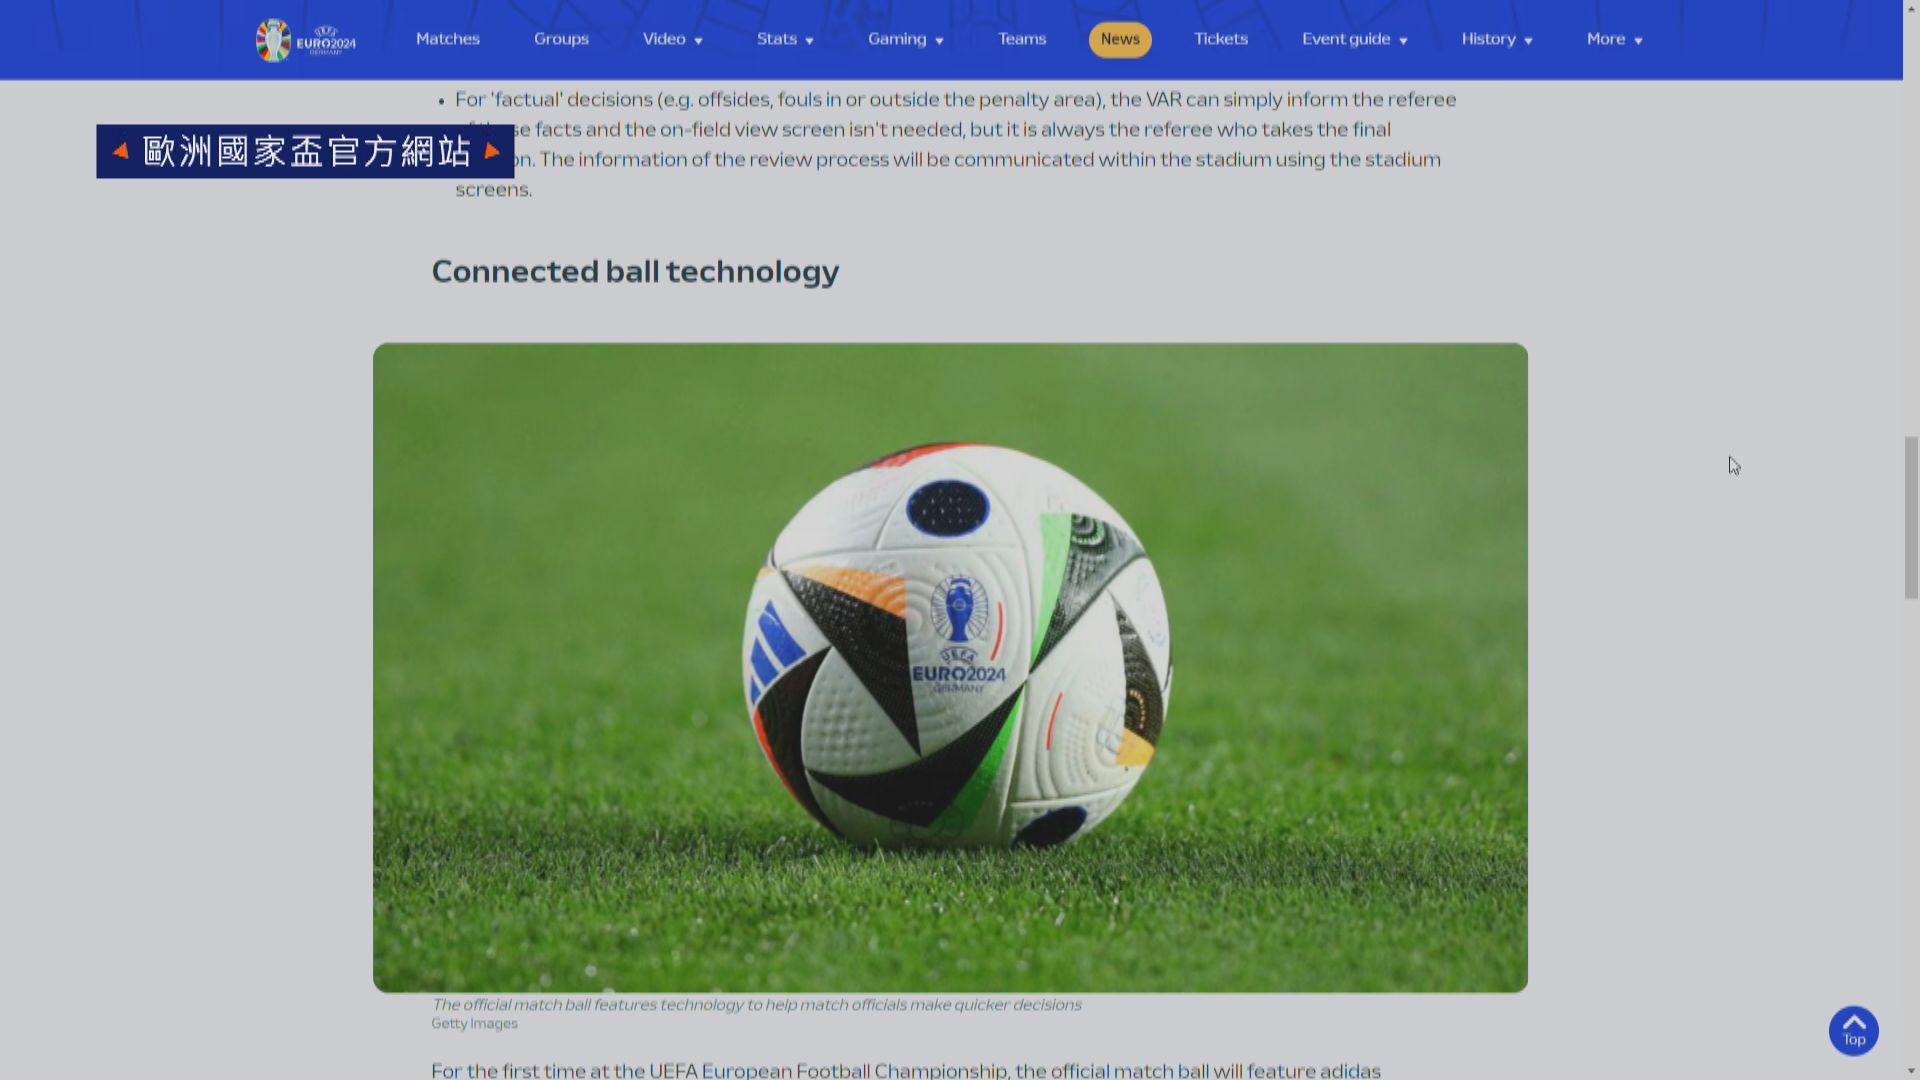 歐國盃使用「連接球技術」 比賽專用球內置晶片檢測是否觸球